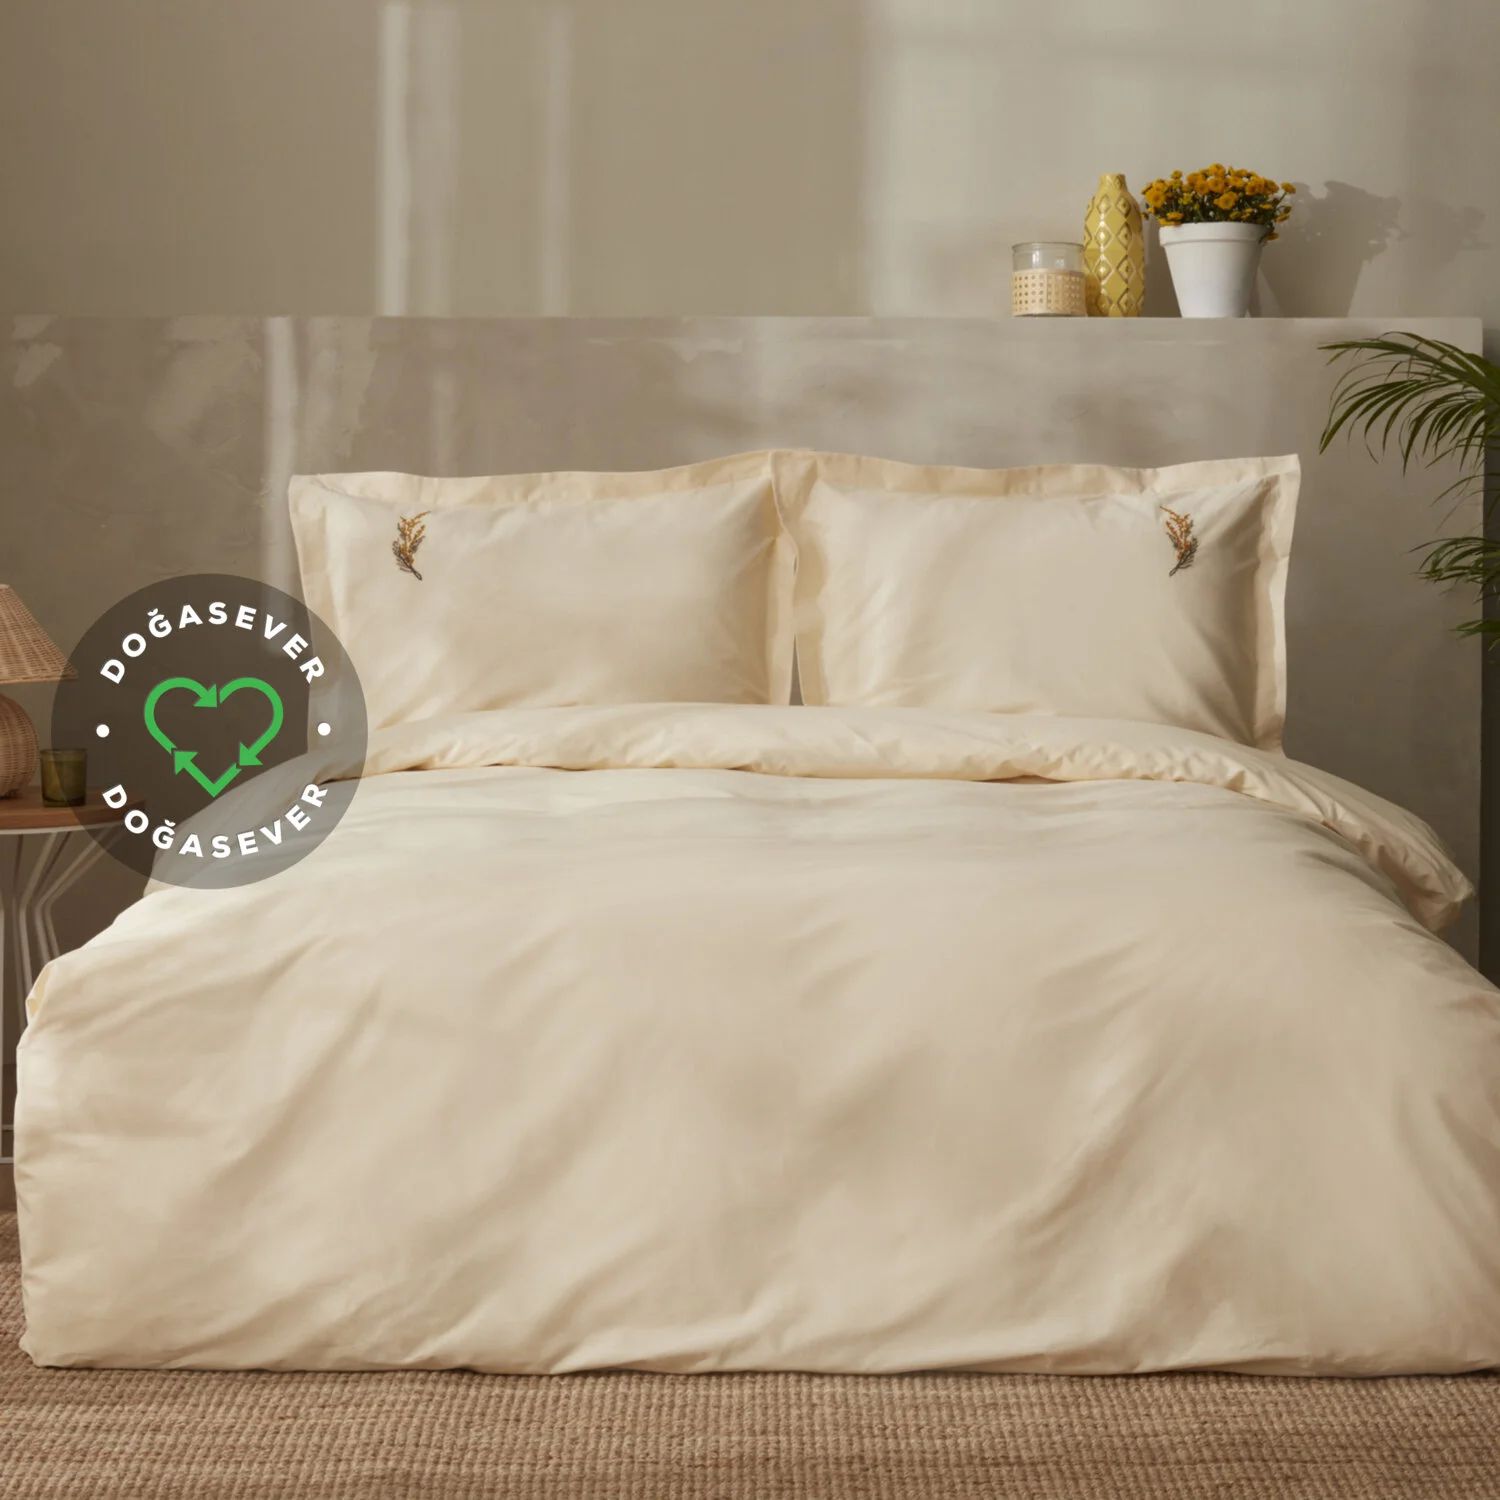 комплект постельного белья karaca home pollen из льна цвет хаки Комплект постельного белья Karaca Home Olive Vegan, цвет хаки